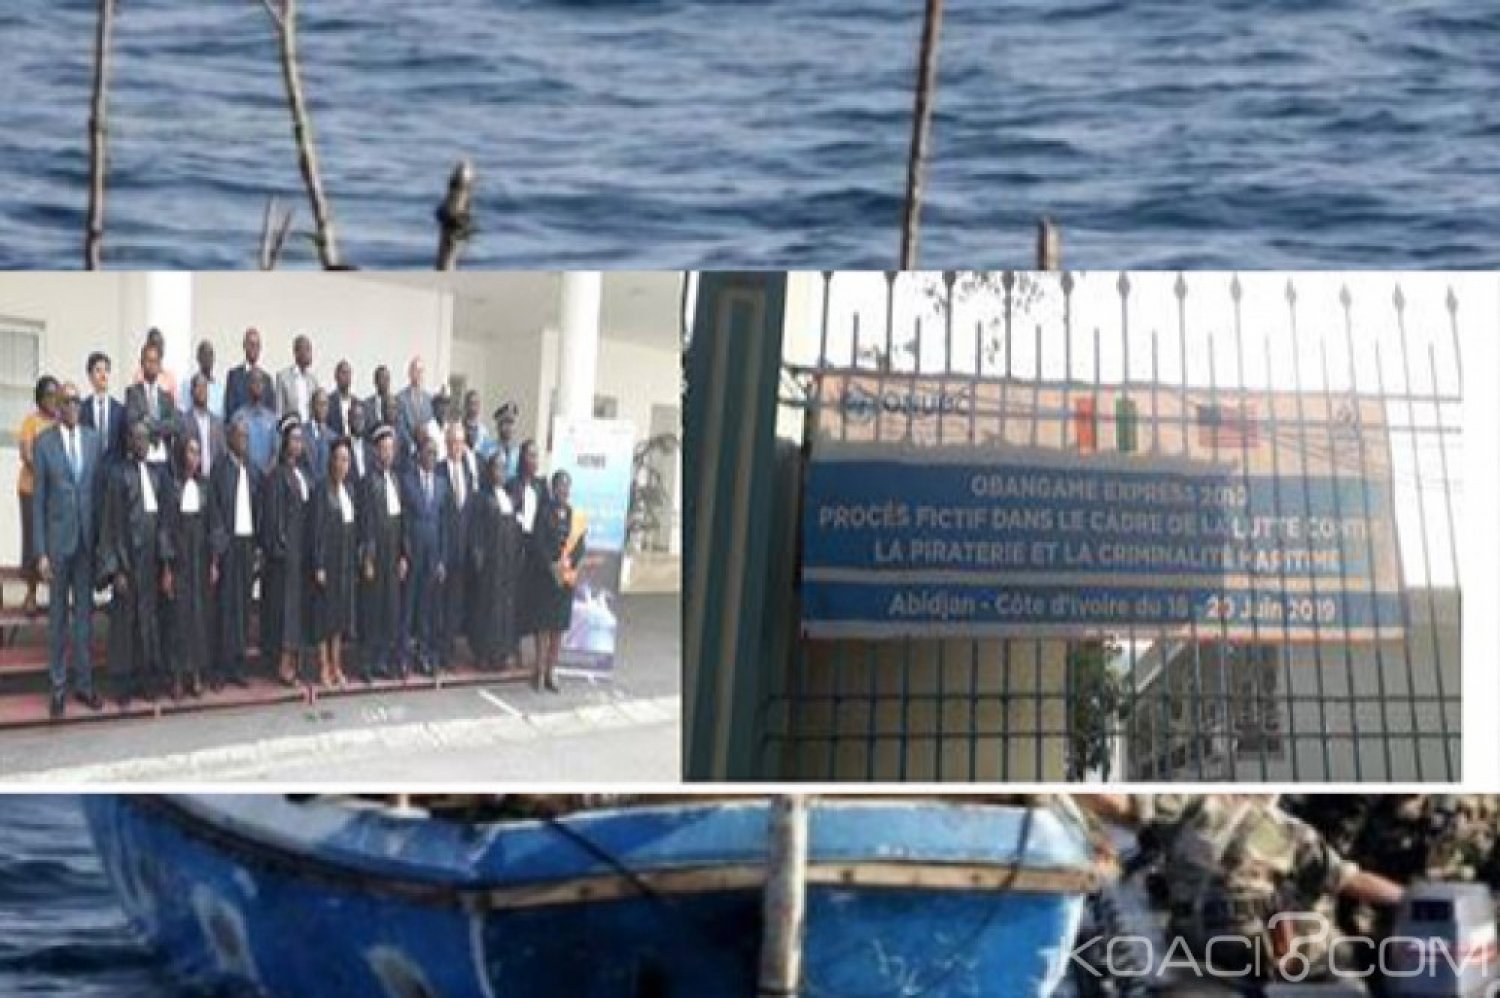 Côte d'Ivoire: Piraterie maritime, un  membre de gang condamné à  perpétuité lors d'un procès fictif à  Abidjan